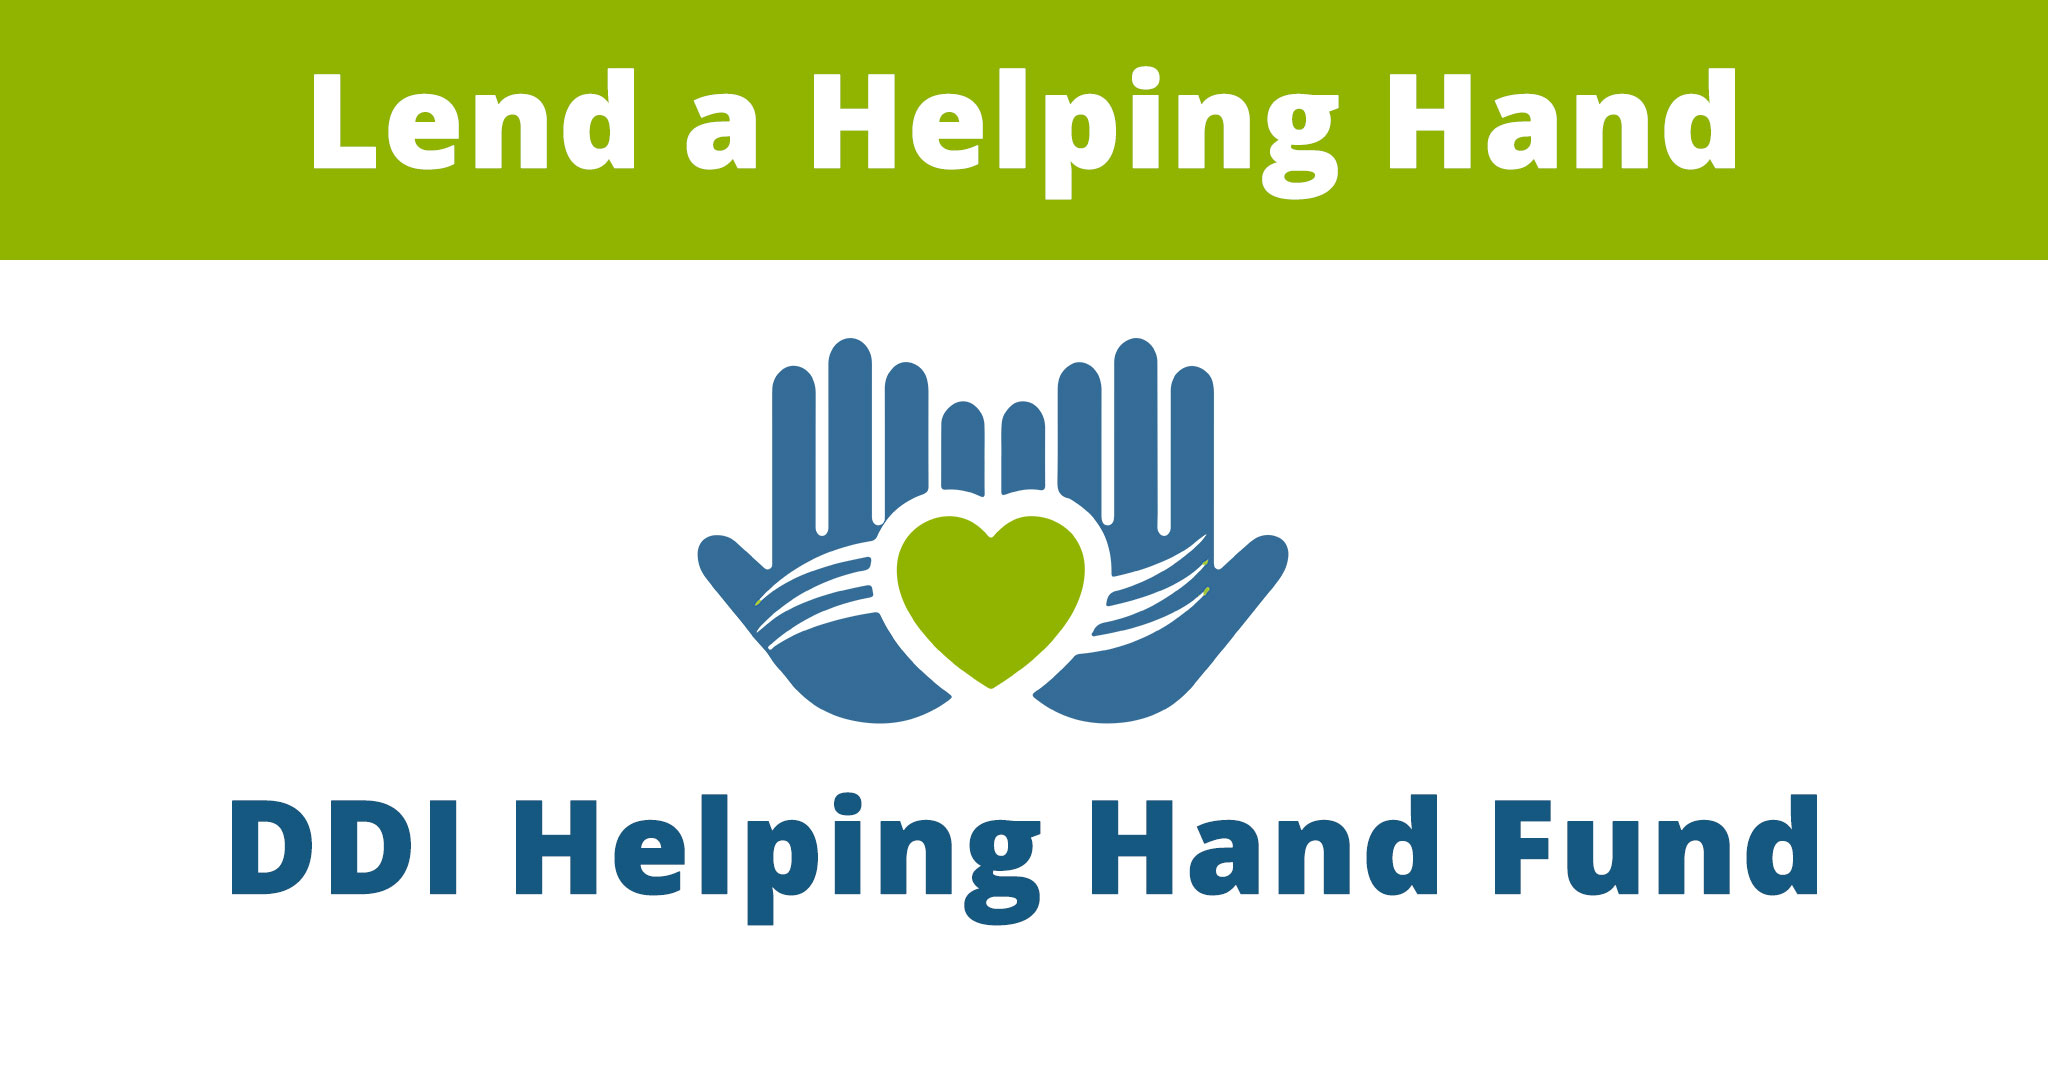 Helping Hands Fund